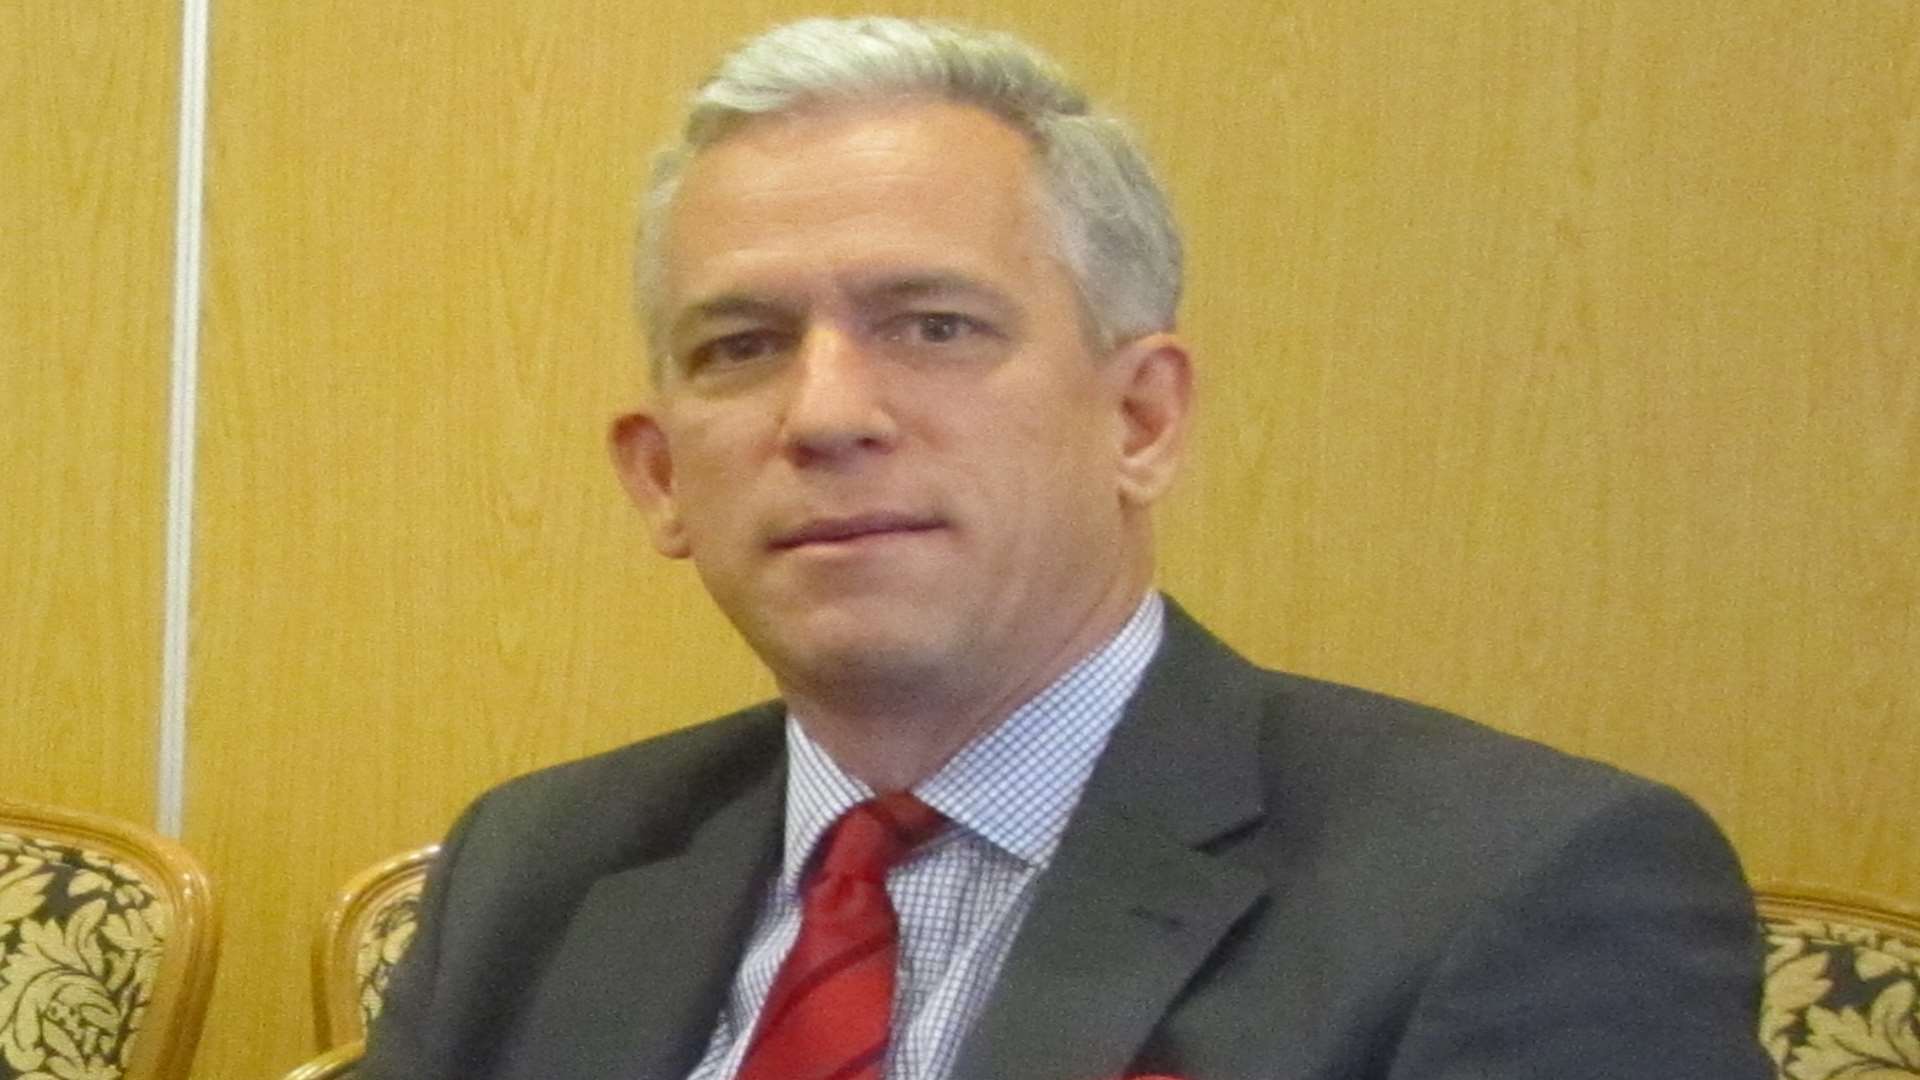 IoD chief economist James Sproule